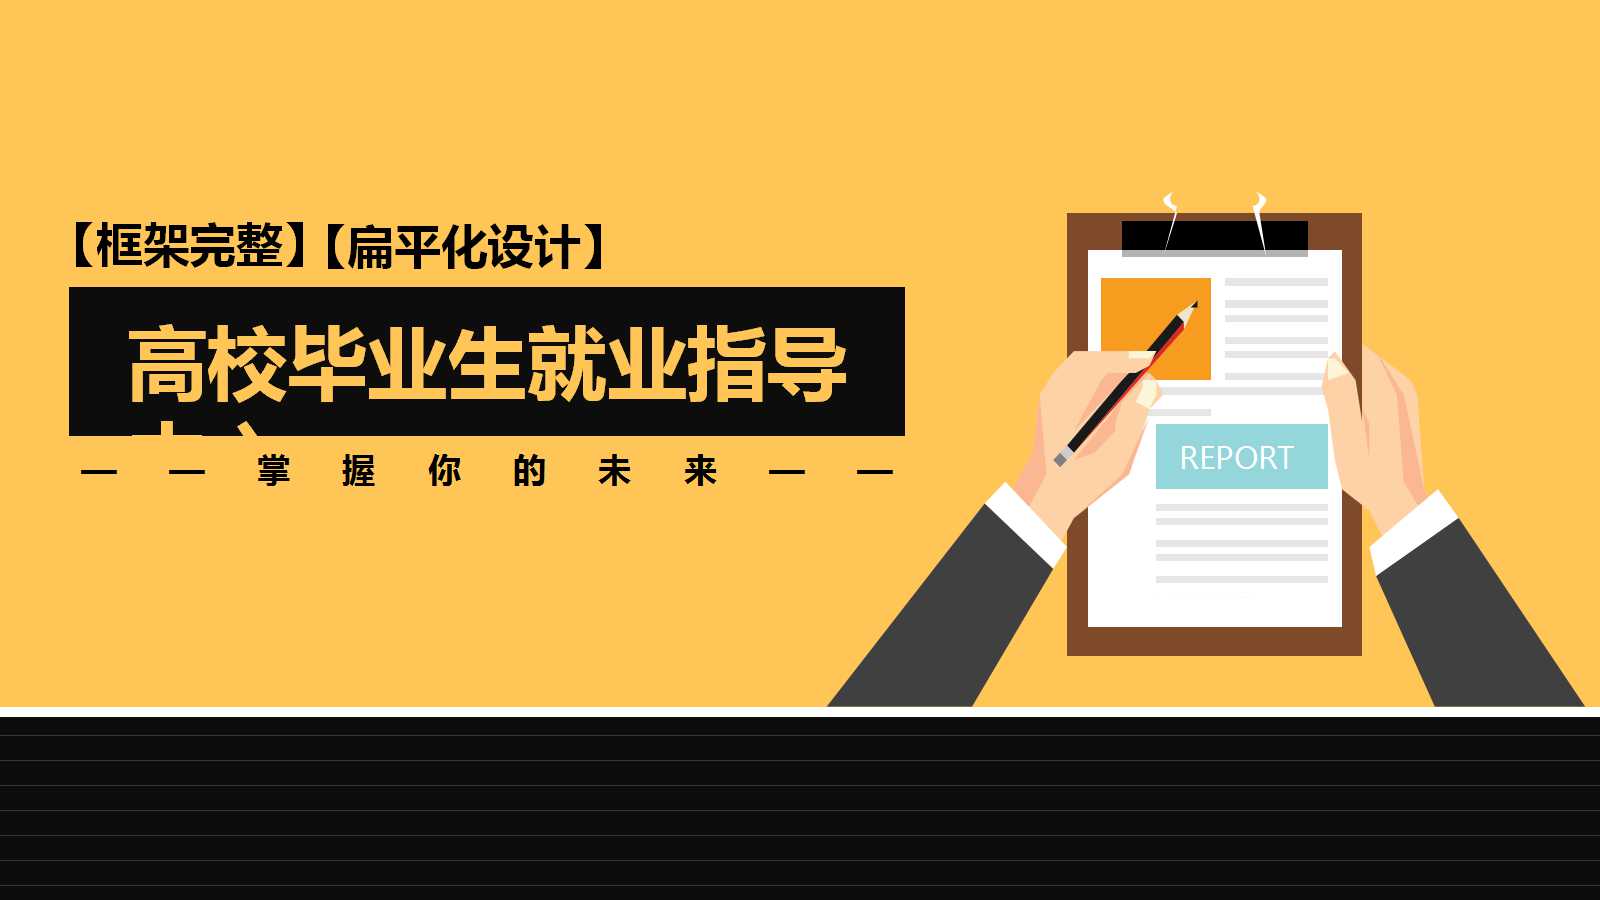 上海市高校毕业生就业指导中心：掌握你的未来PPT课件